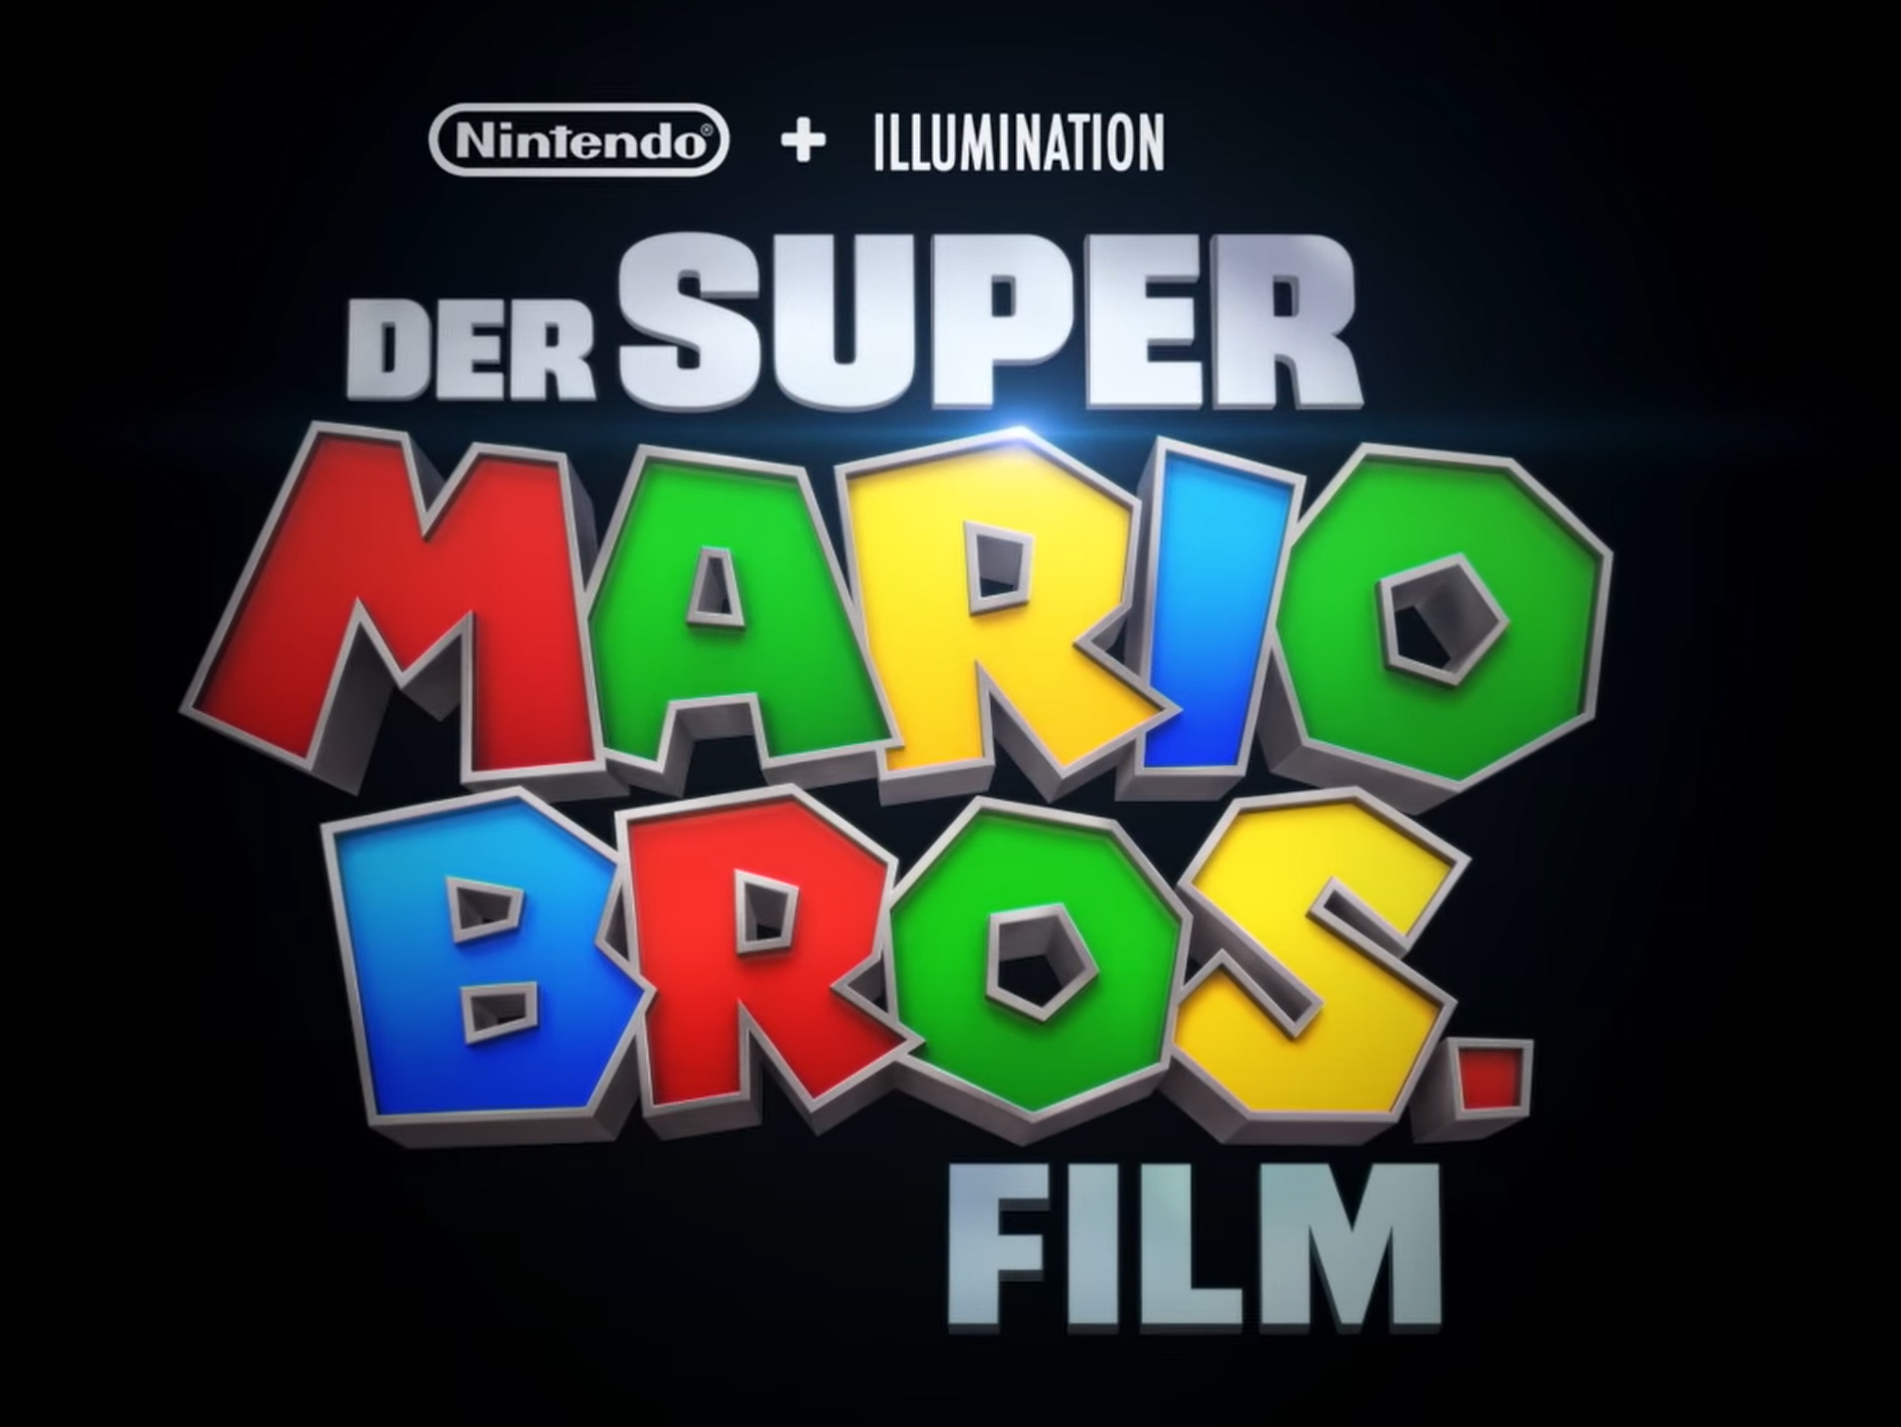 Videoquelle: Illumination, Nintendo Bildquelle: Screenshot aus dem Video